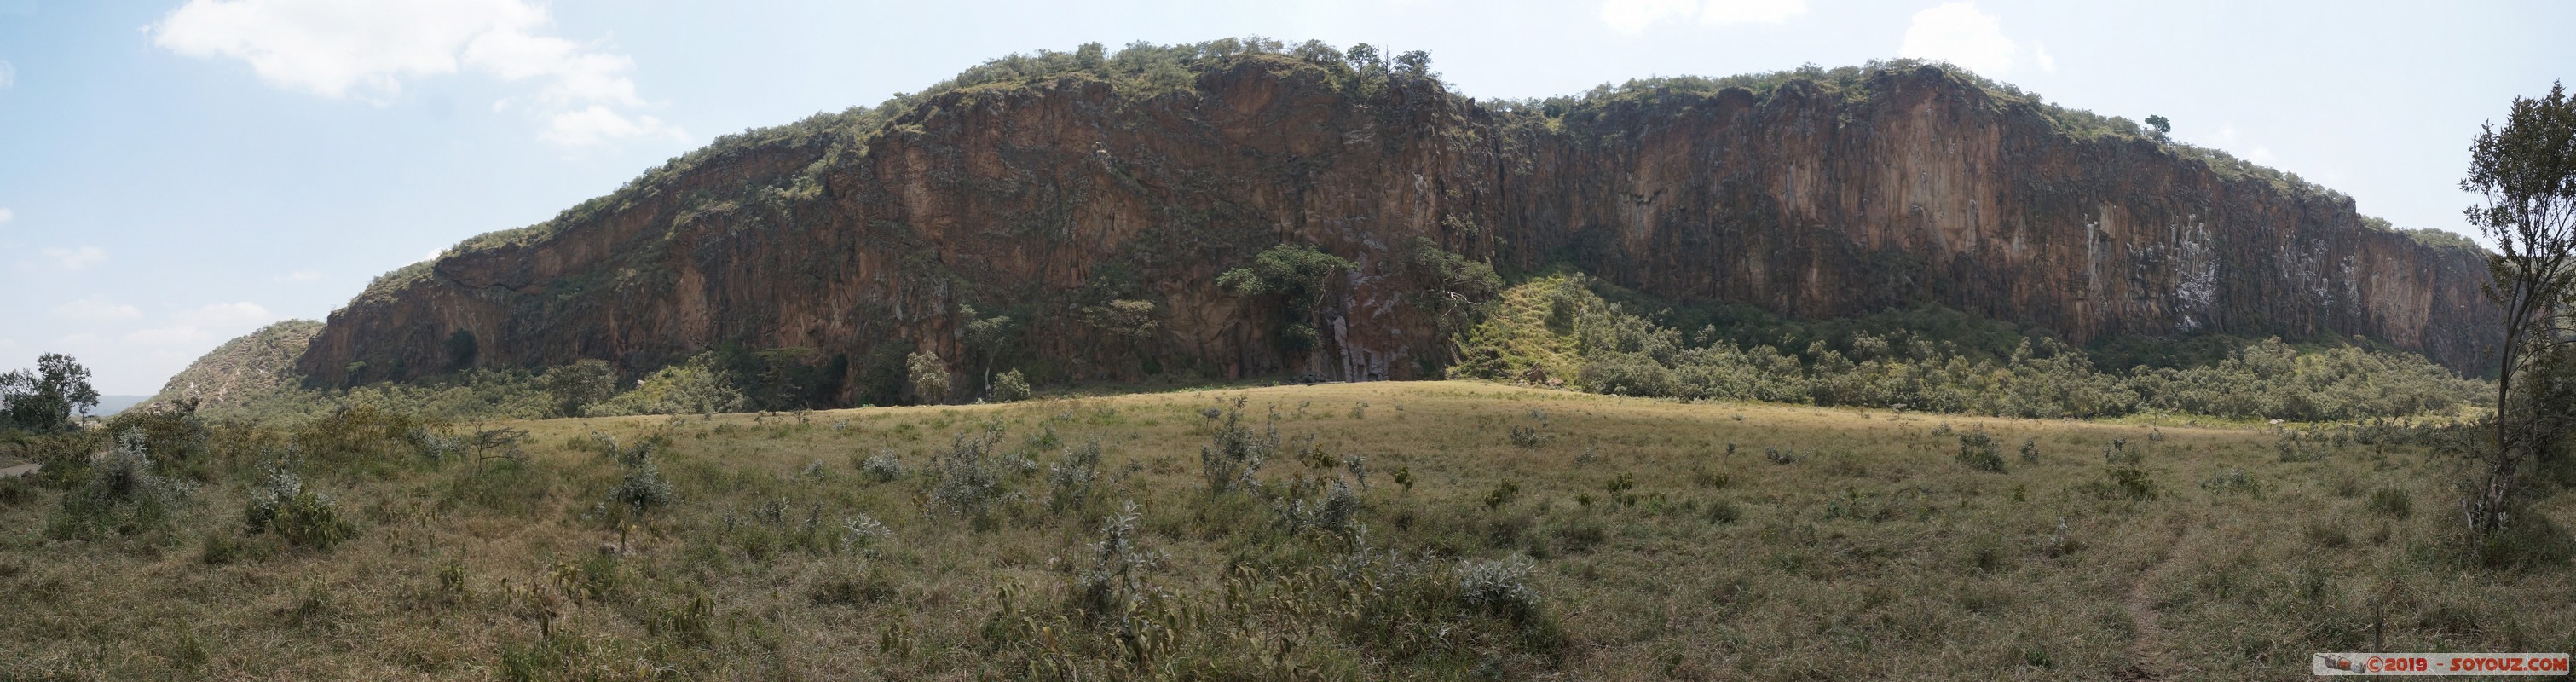 Hell's Gate - Panorama
Mots-clés: KEN Kenya Lolonito Narok Hell's Gate panorama